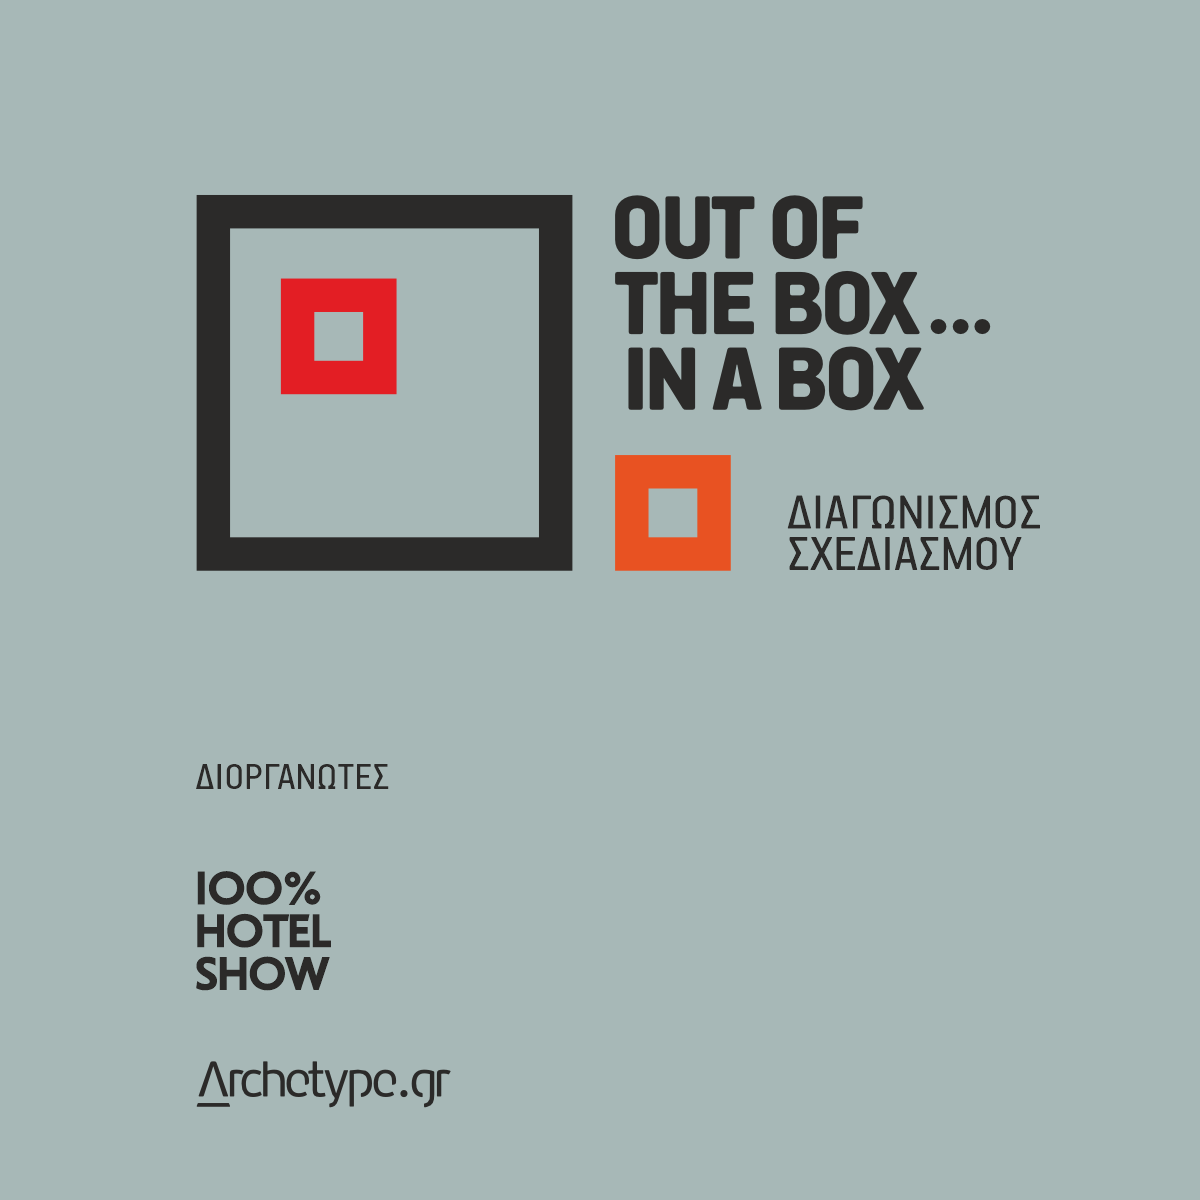 Διαγωνισμός Σχεδιασμού | “Out of the box … in a box”